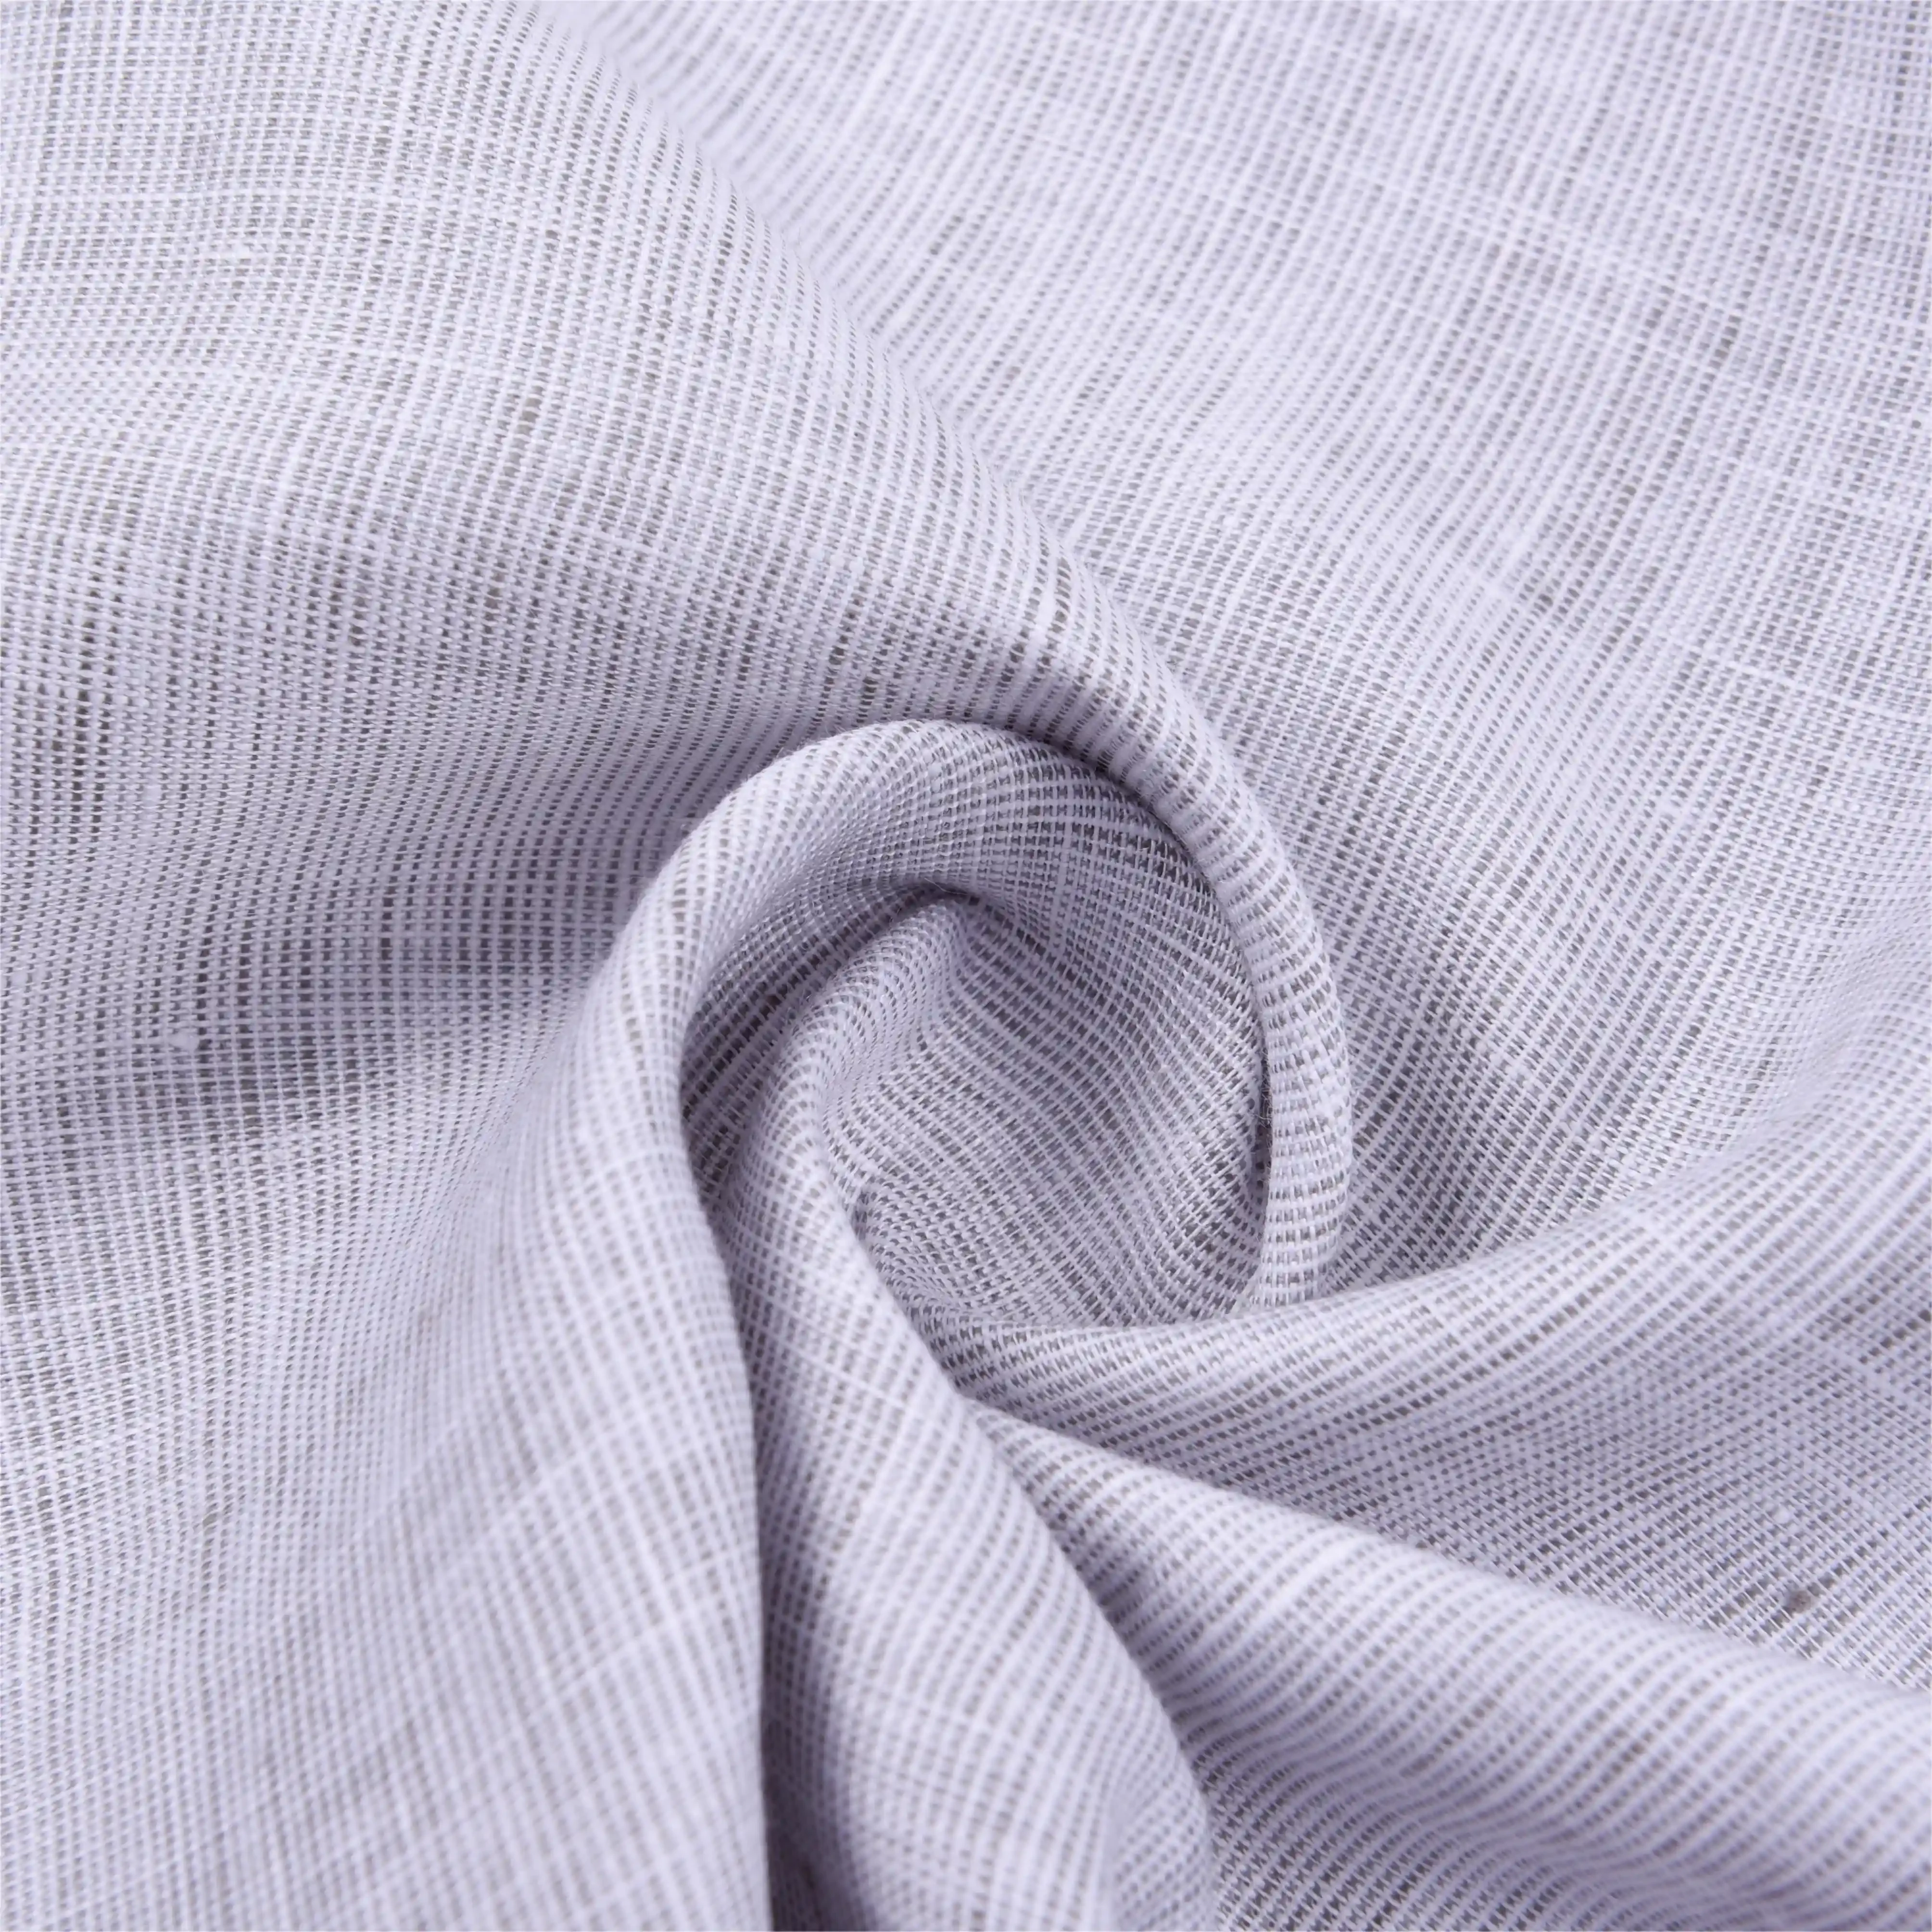 Clean Linen Woven Fabric